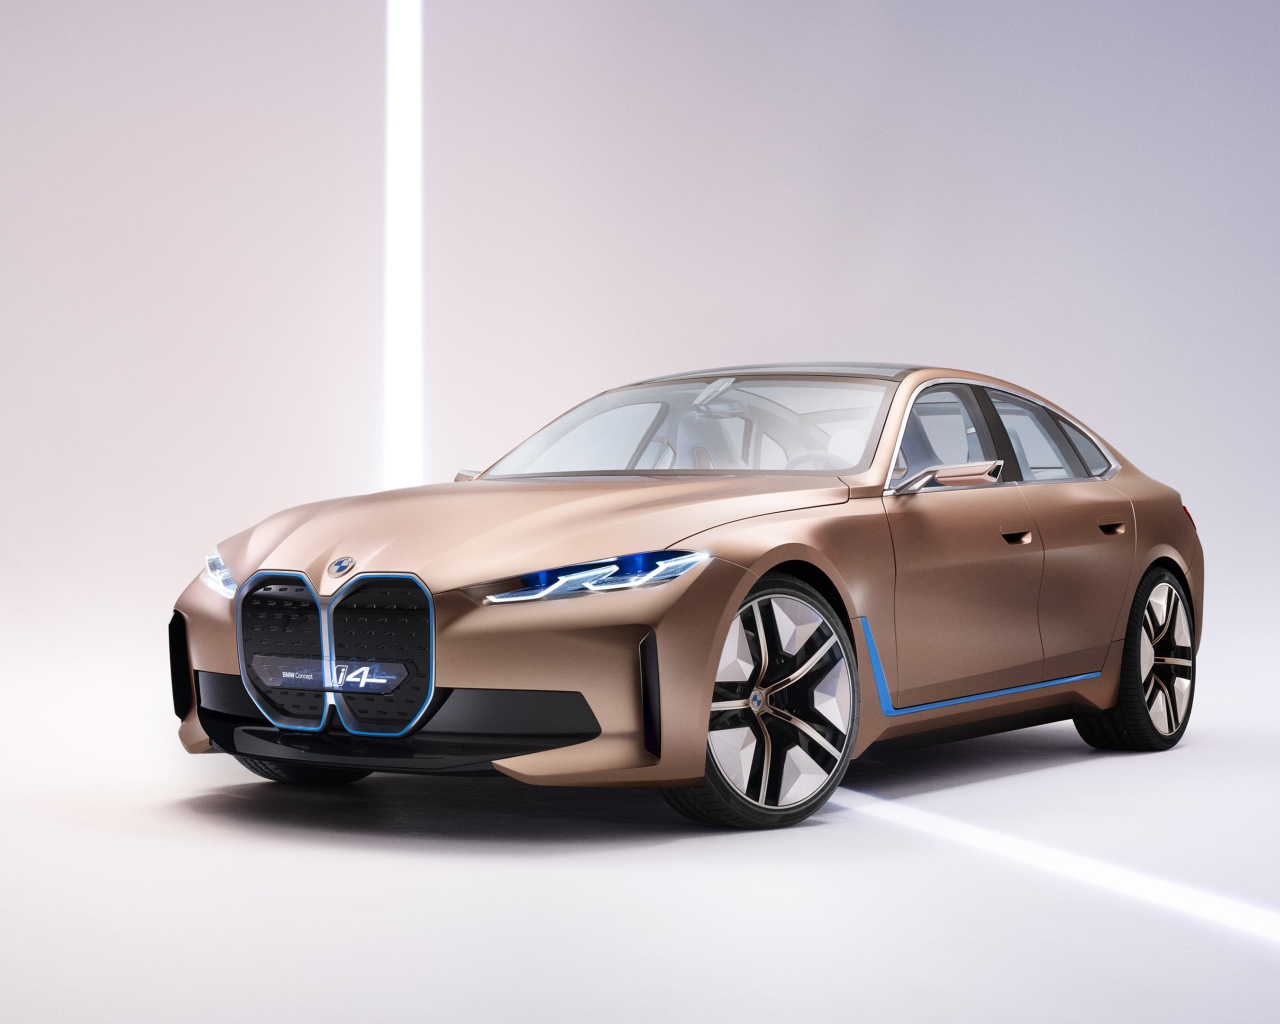 Автомобиль BMW Concept I4 2020 года на сером фоне